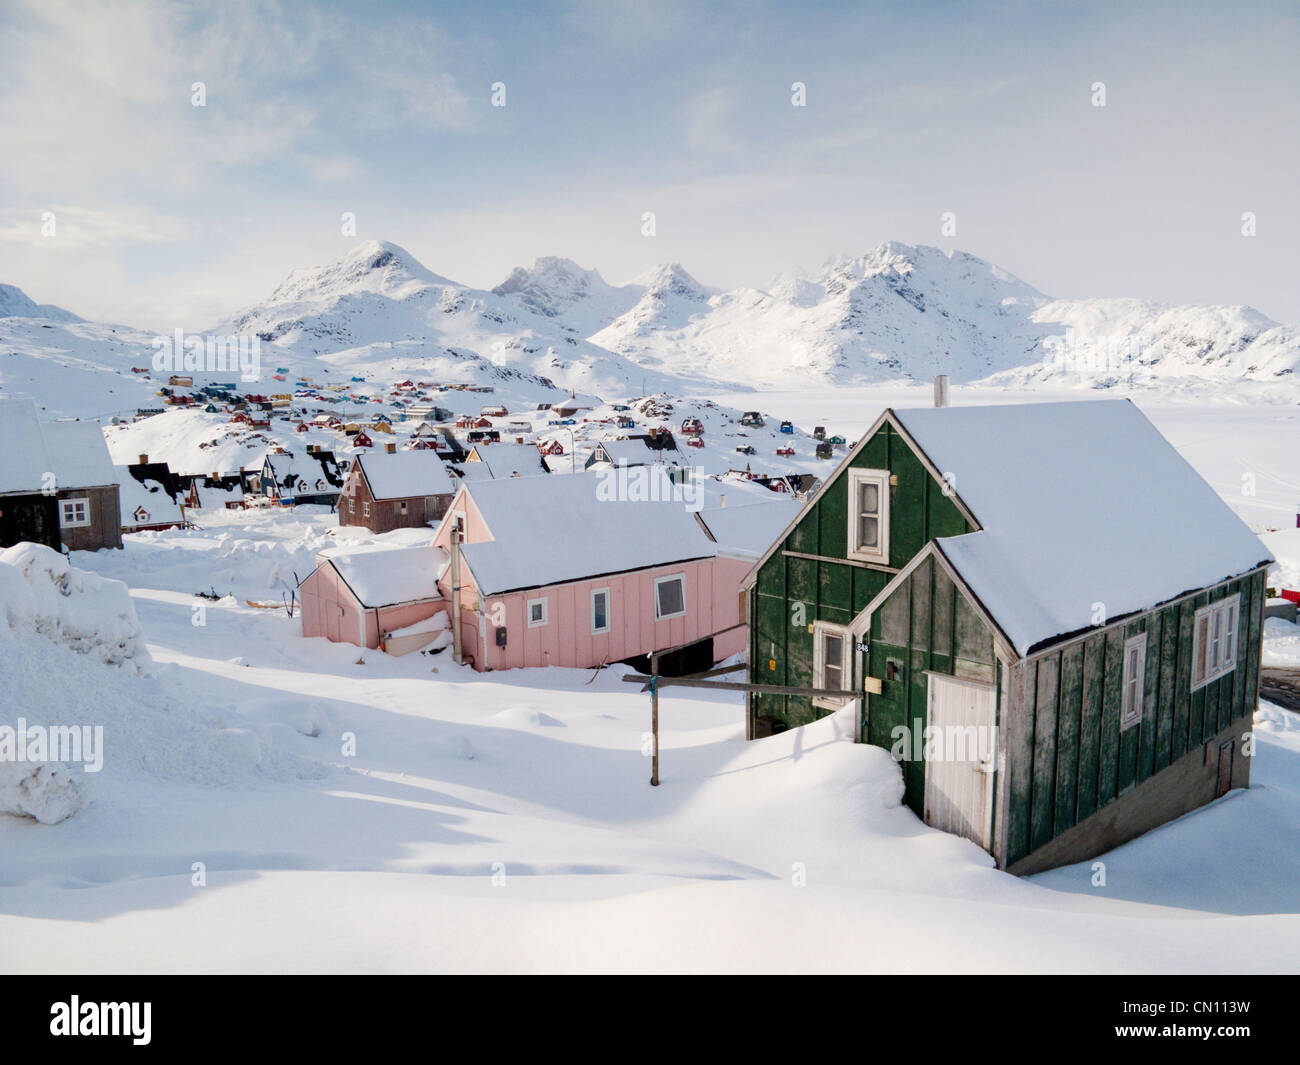 Vista sul villaggio inuit di Tasiilaq, Groenlandia, Arctic in una scena invernale Foto Stock